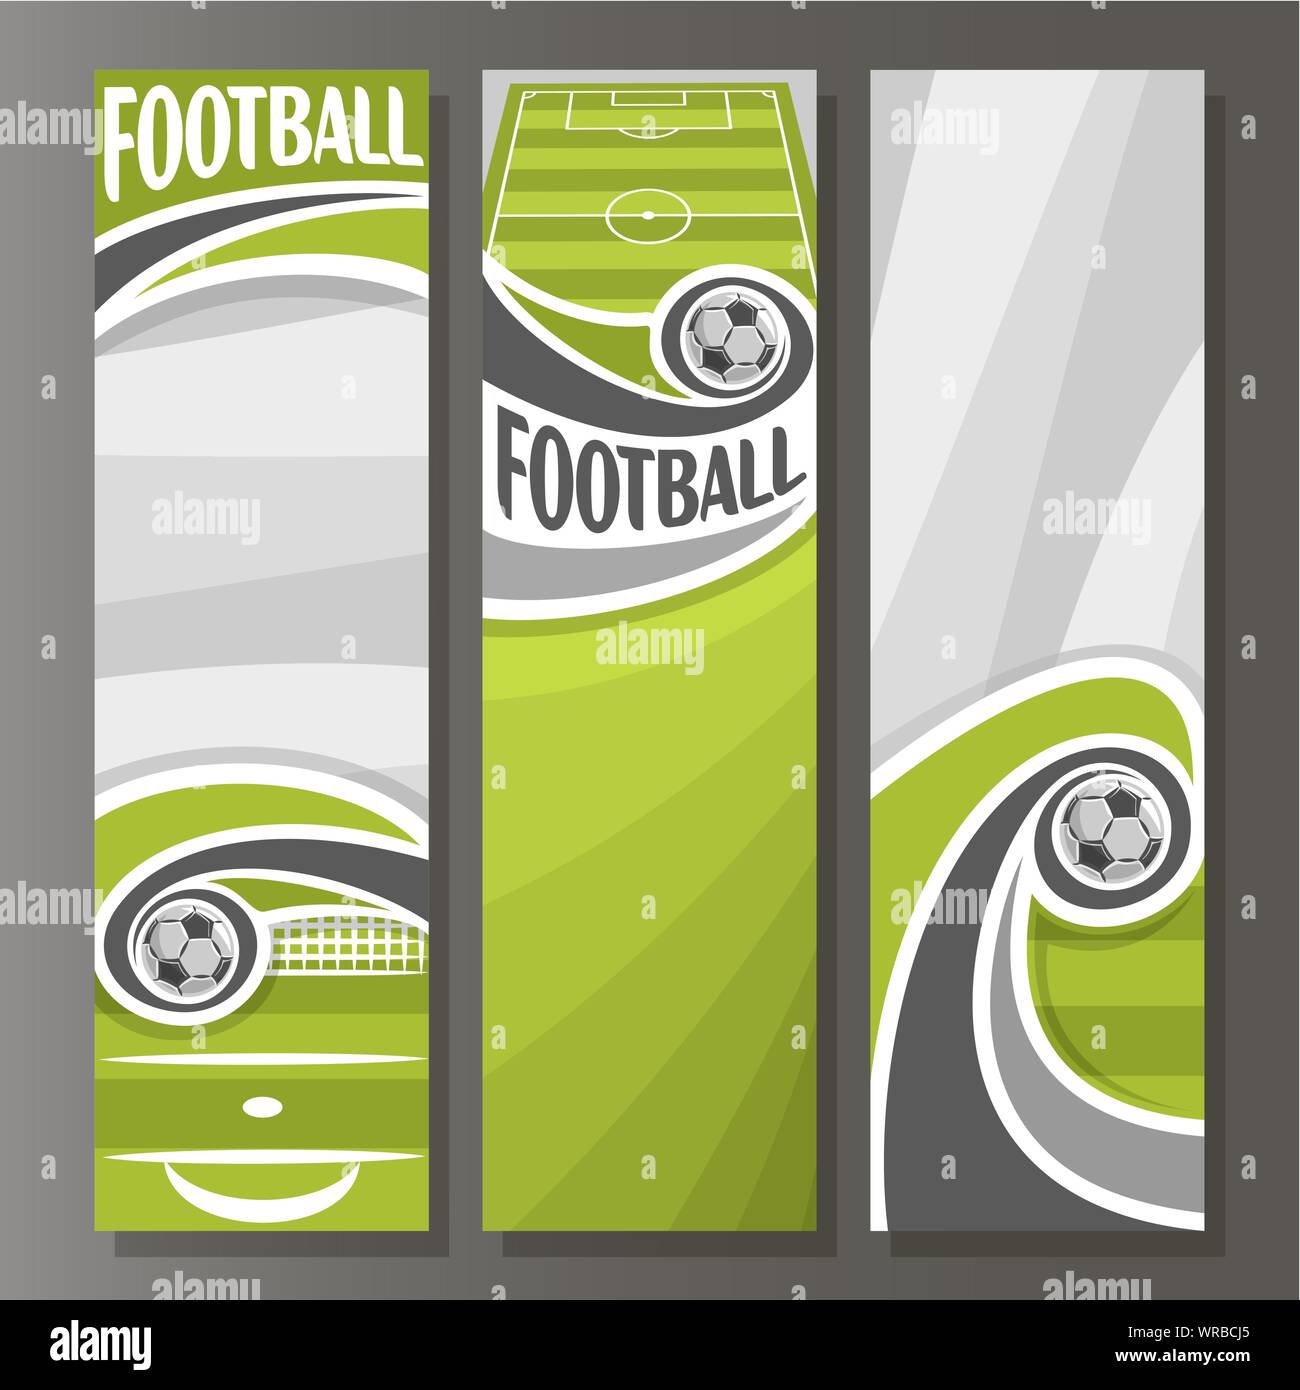 Vettore banner verticale per il calcio: 3 modelli per testo sul tema calcistico, verde sportivo campo, battenti in goal soccer ball su sfondo grigio Illustrazione Vettoriale